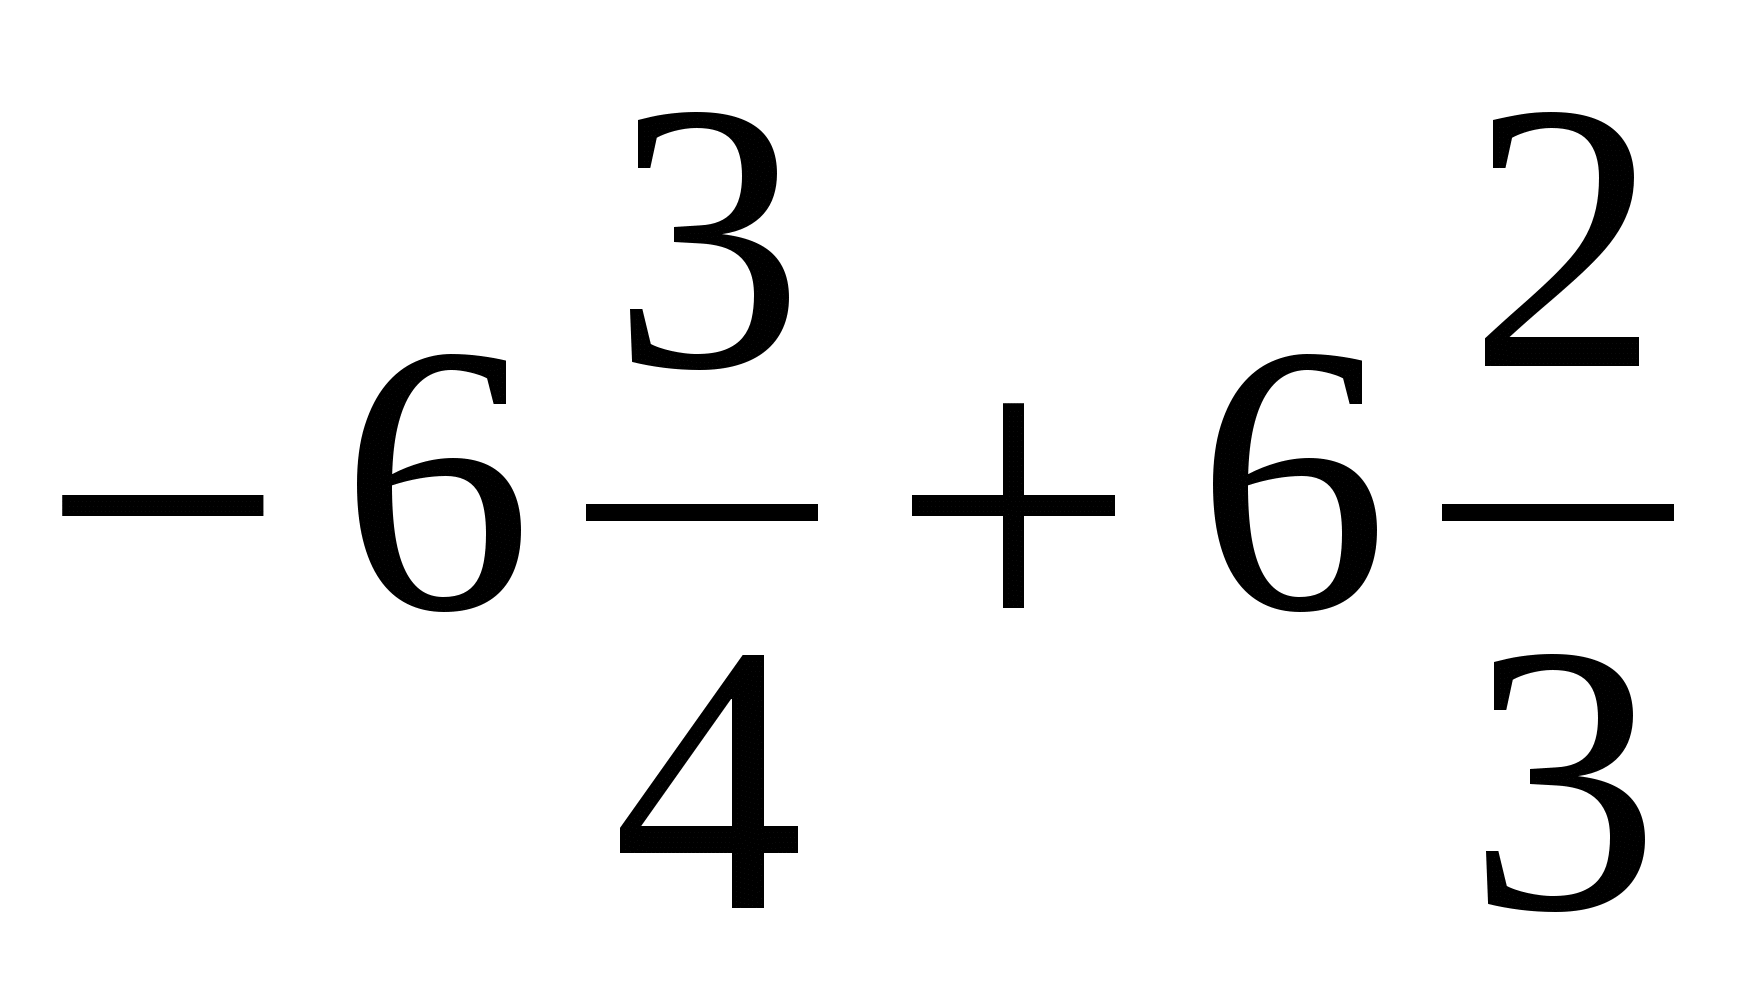 Математика 6 класс отрицательные числа задания